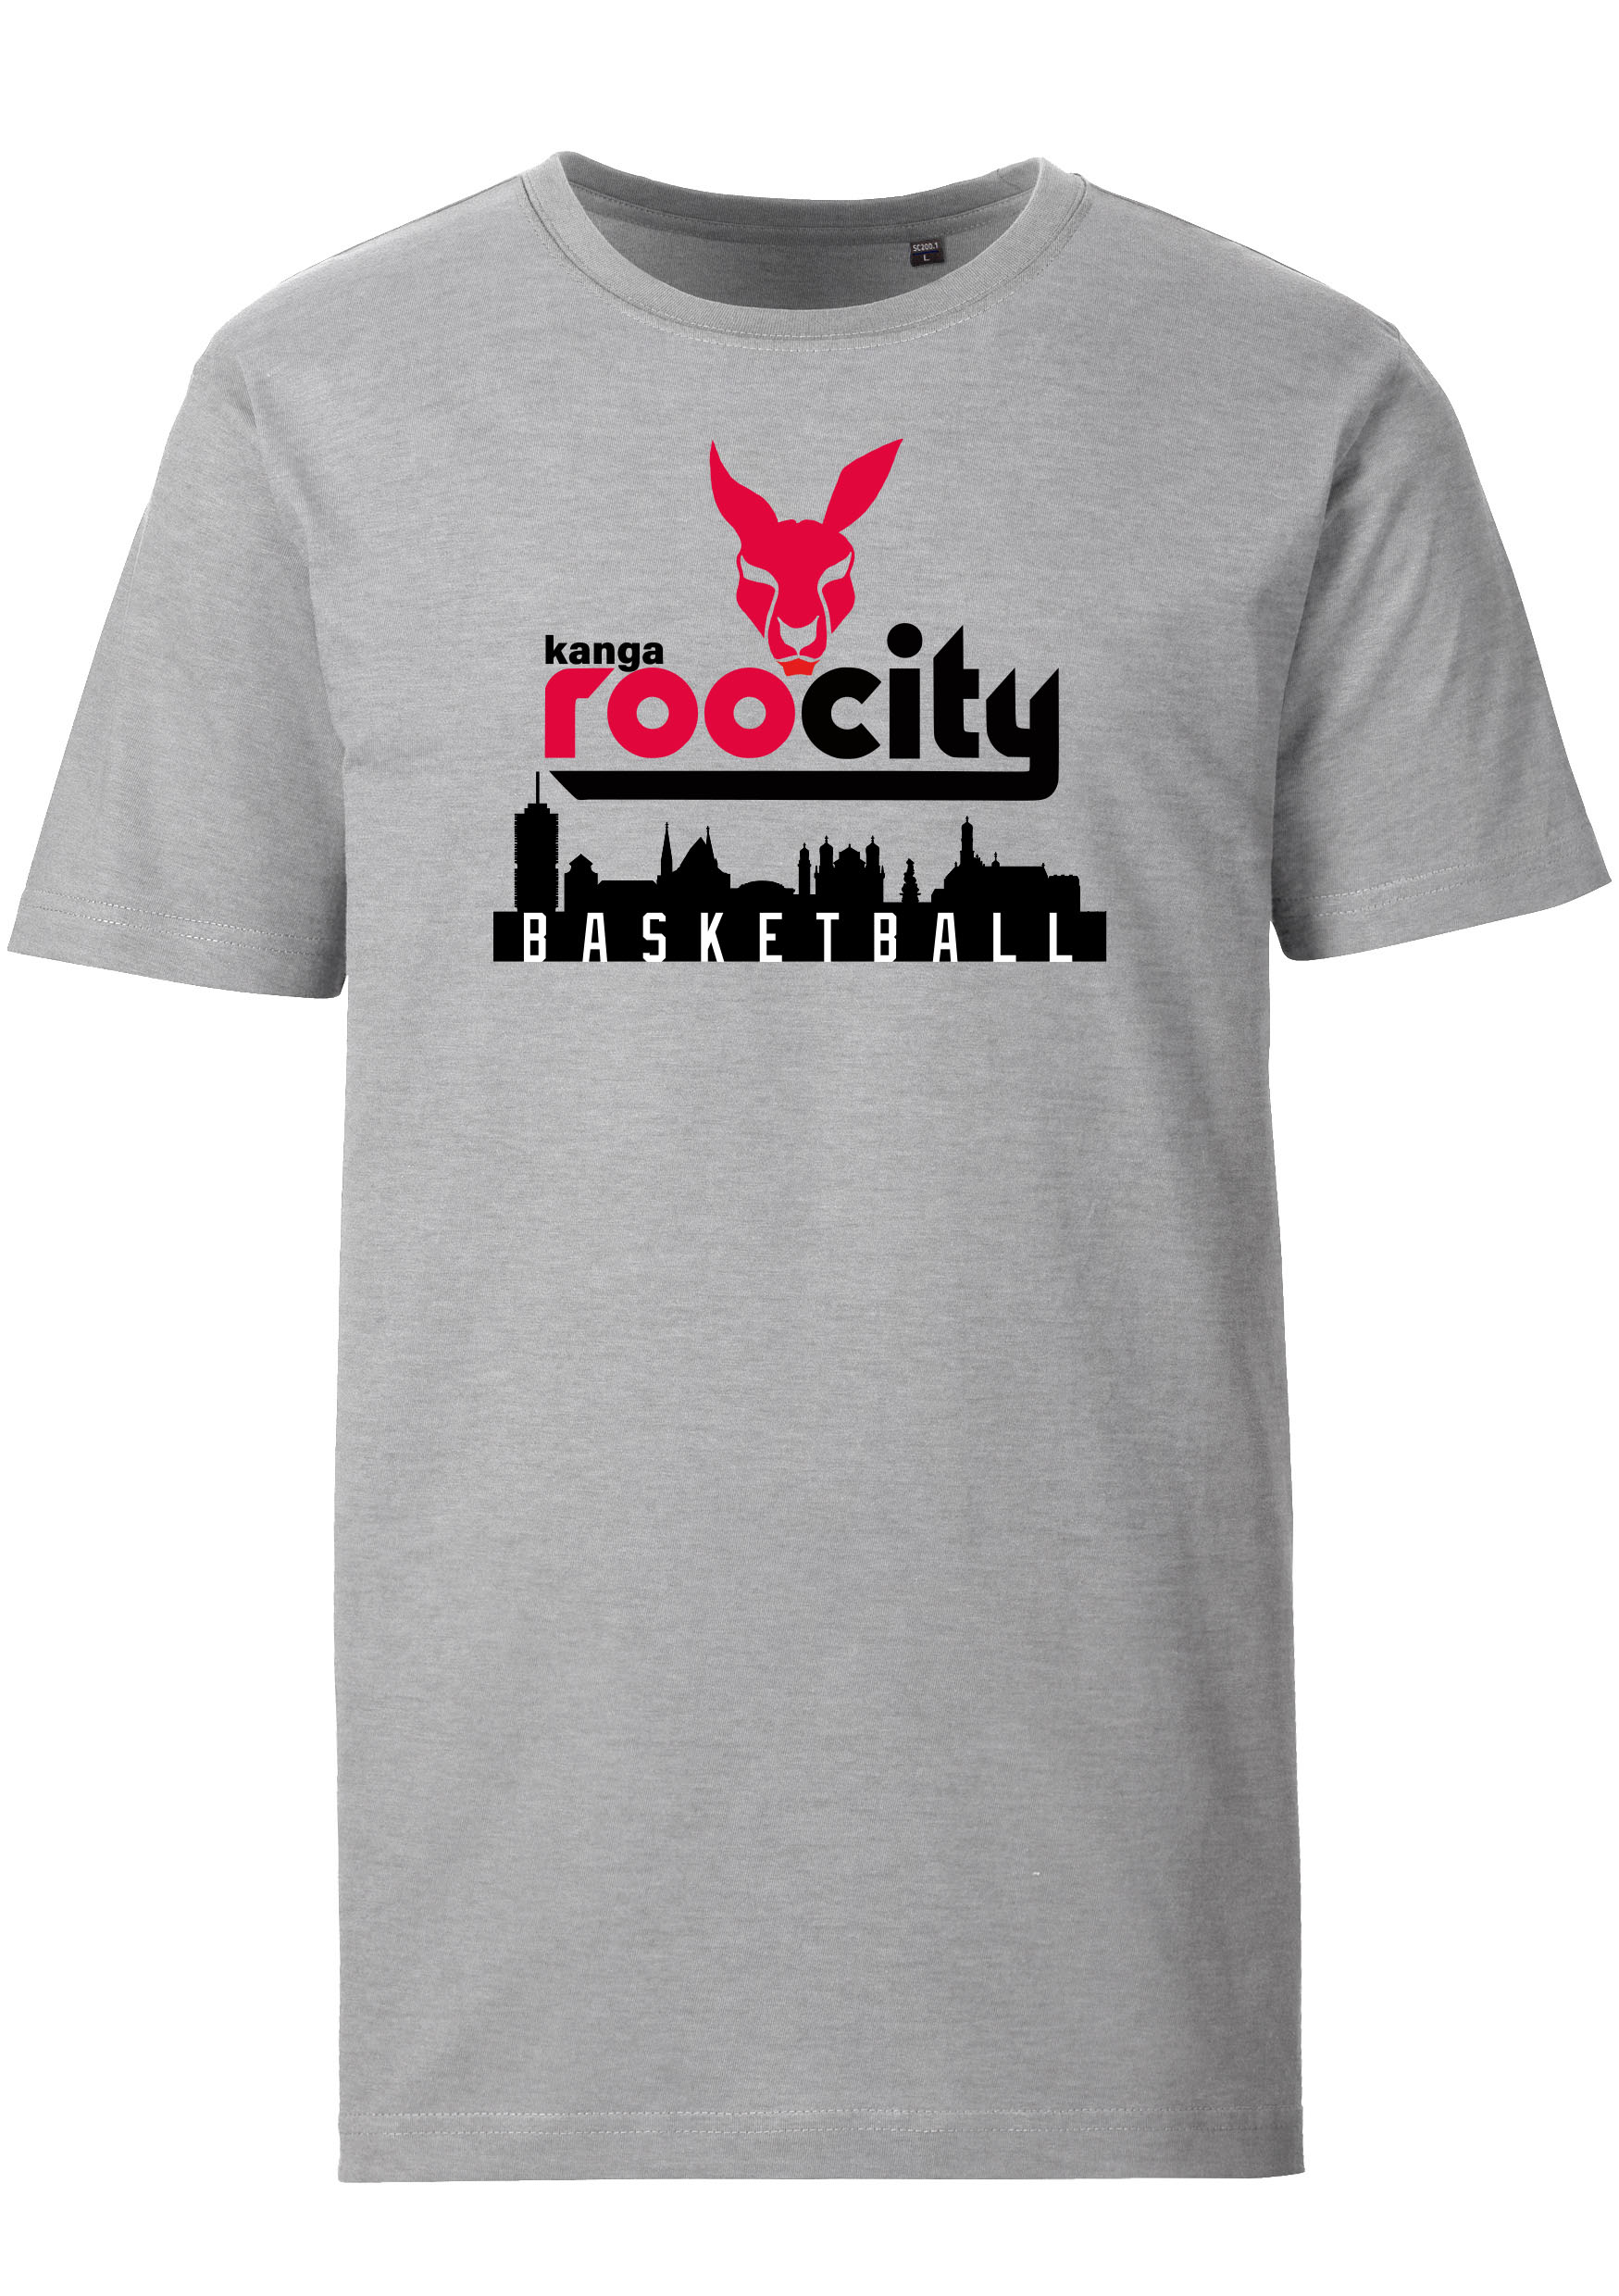 Hessing Kangaroos T-Shirt RooCity